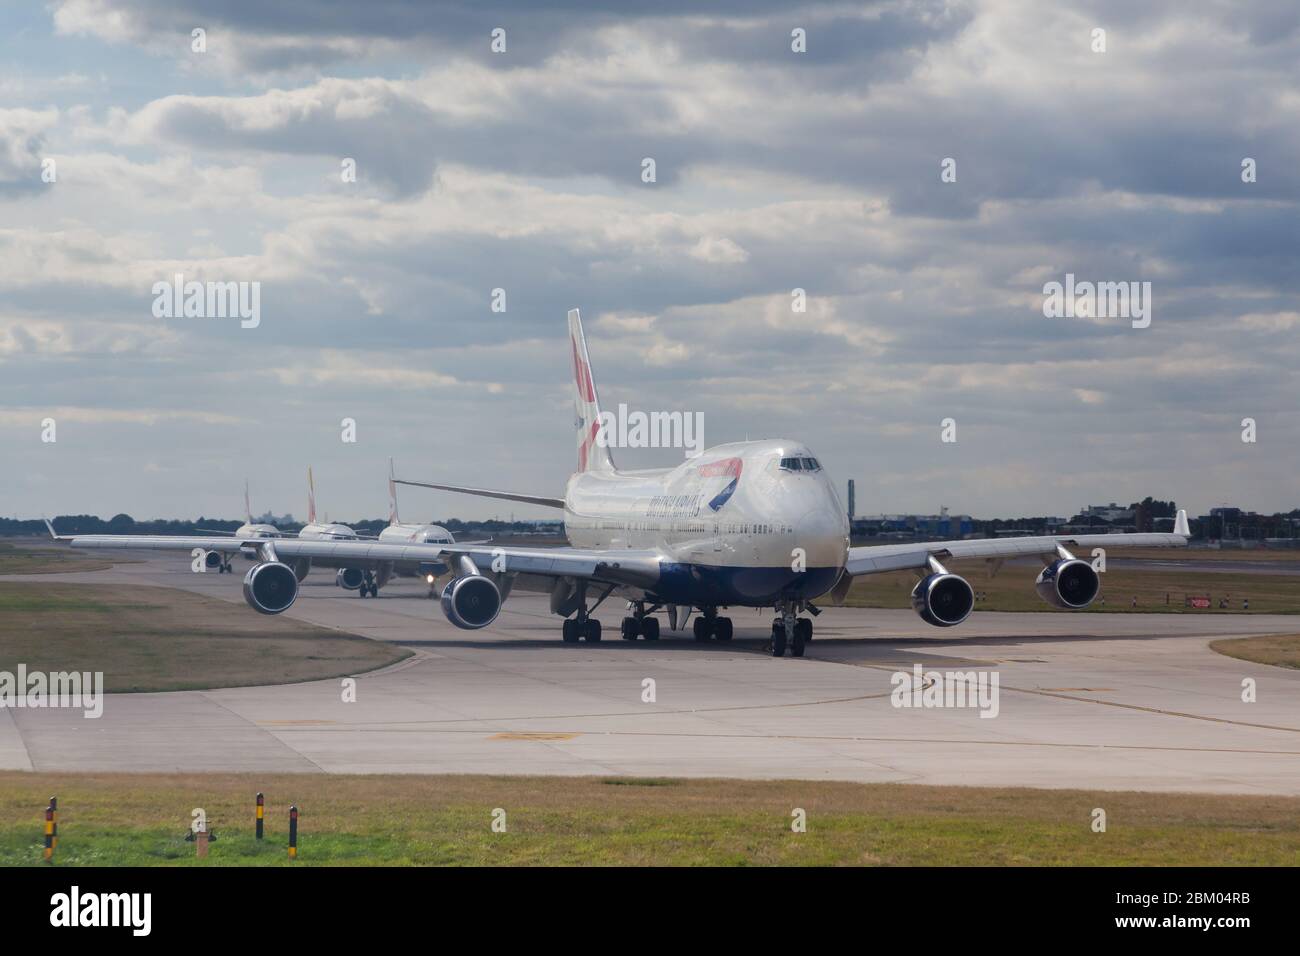 Un aereo Boing 747 (Jumbo Jet) appartenente alla British Airways si allinea in taxi con altri aerei all'aeroporto di Heathrow, Londra, Regno Unito Foto Stock